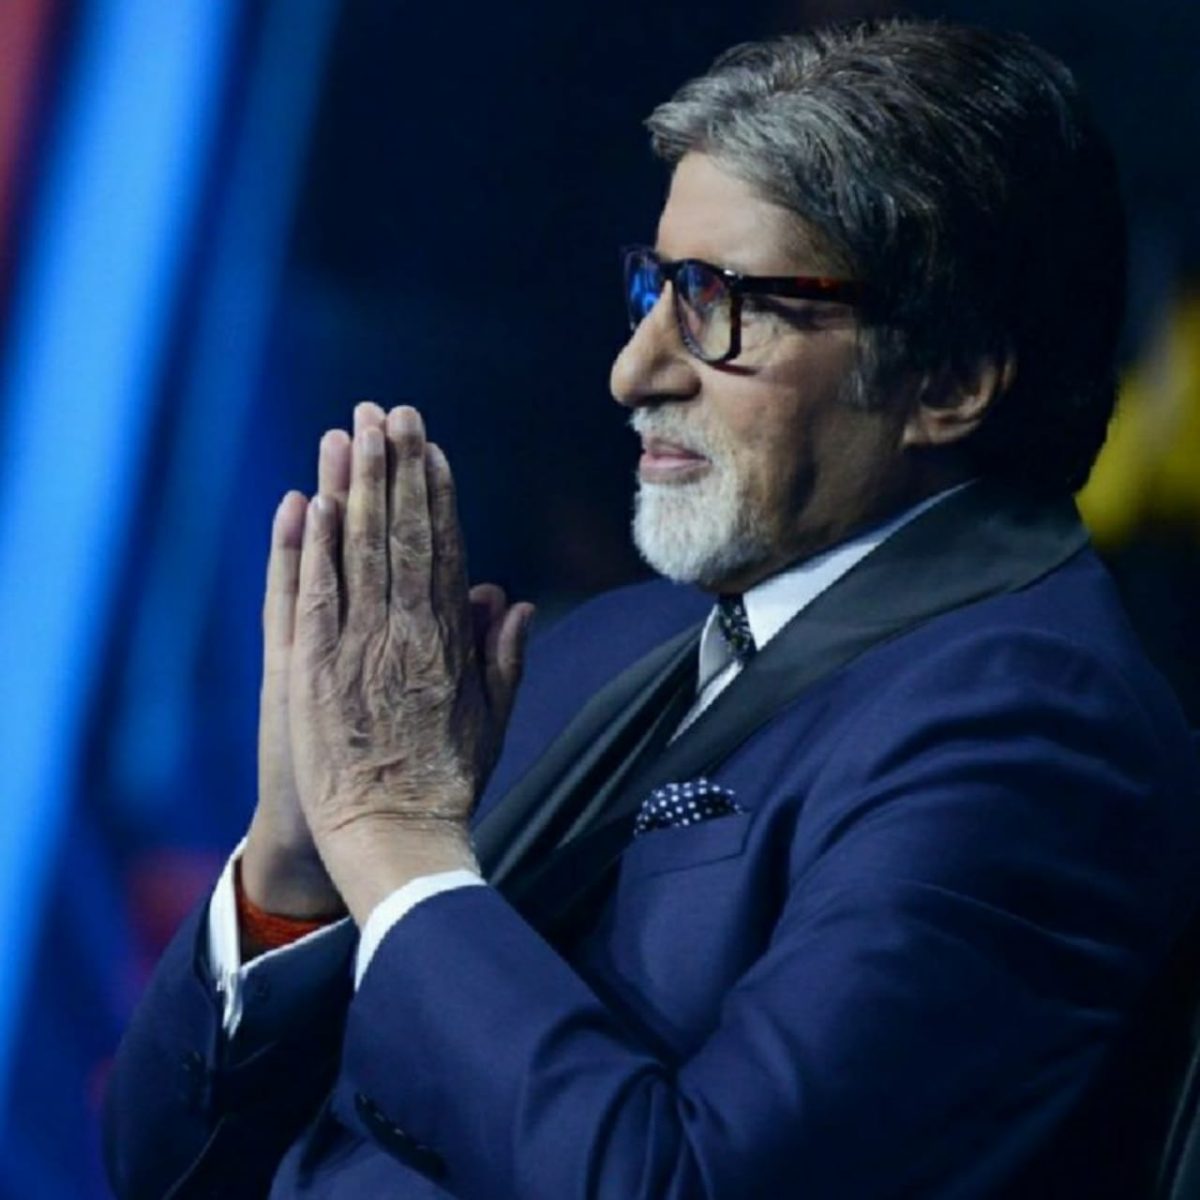 अमिताभ बच्चन ने फिर तोड़े सारे रिकॉर्ड, NFT Auction के बिड कलेक्शन में 5 लाख डॉलर की बोली